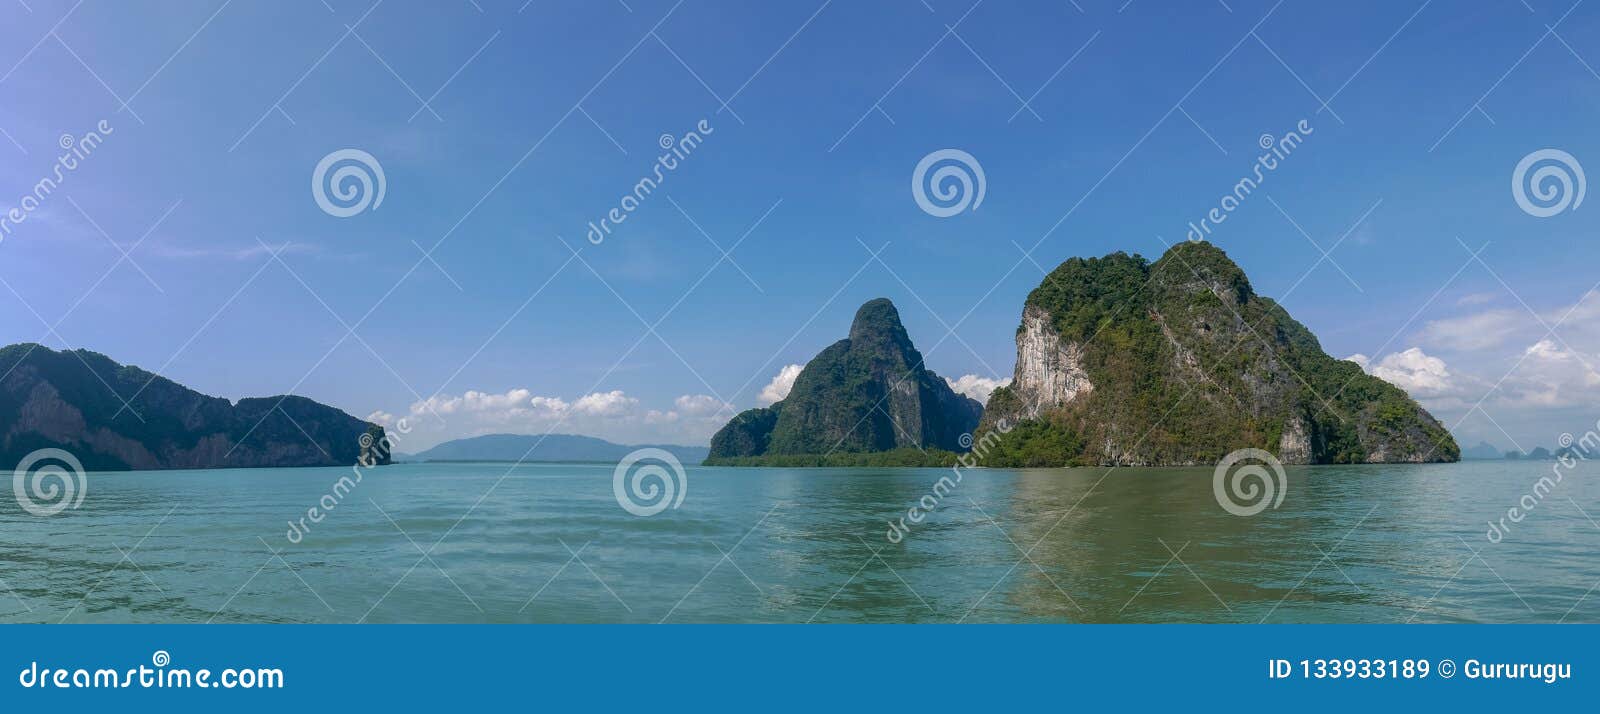 Tropical Sea, Sky & Mountain in Summer in Thailand, Phang Nga Ba Stock